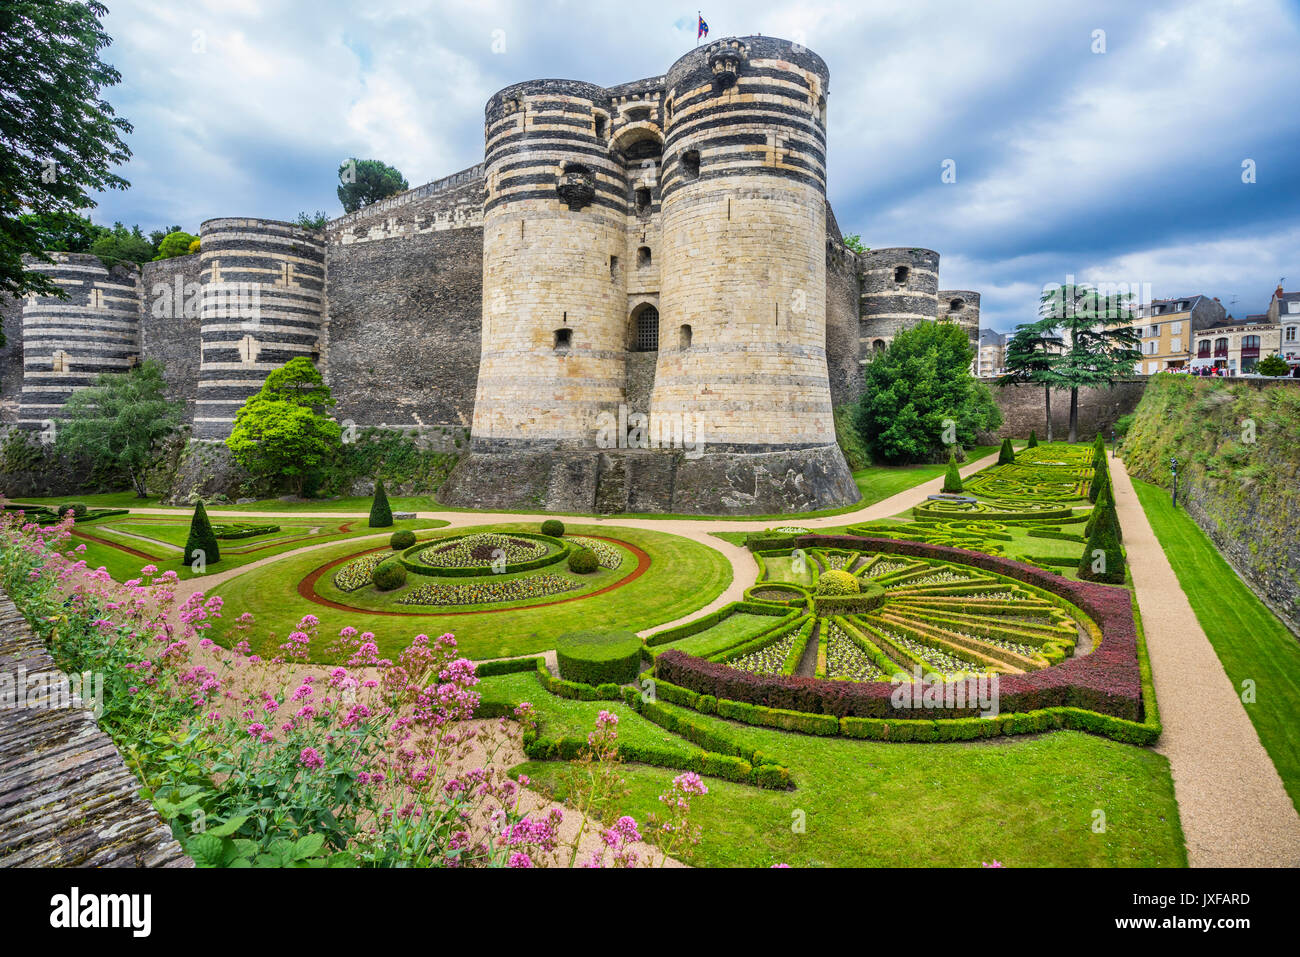 Frankreich, Pays de la Loire, Angers, Château d'Angers, verzierte Gärten unter dem South Gate Zinnen der mittelalterlichen Burg Stockfoto